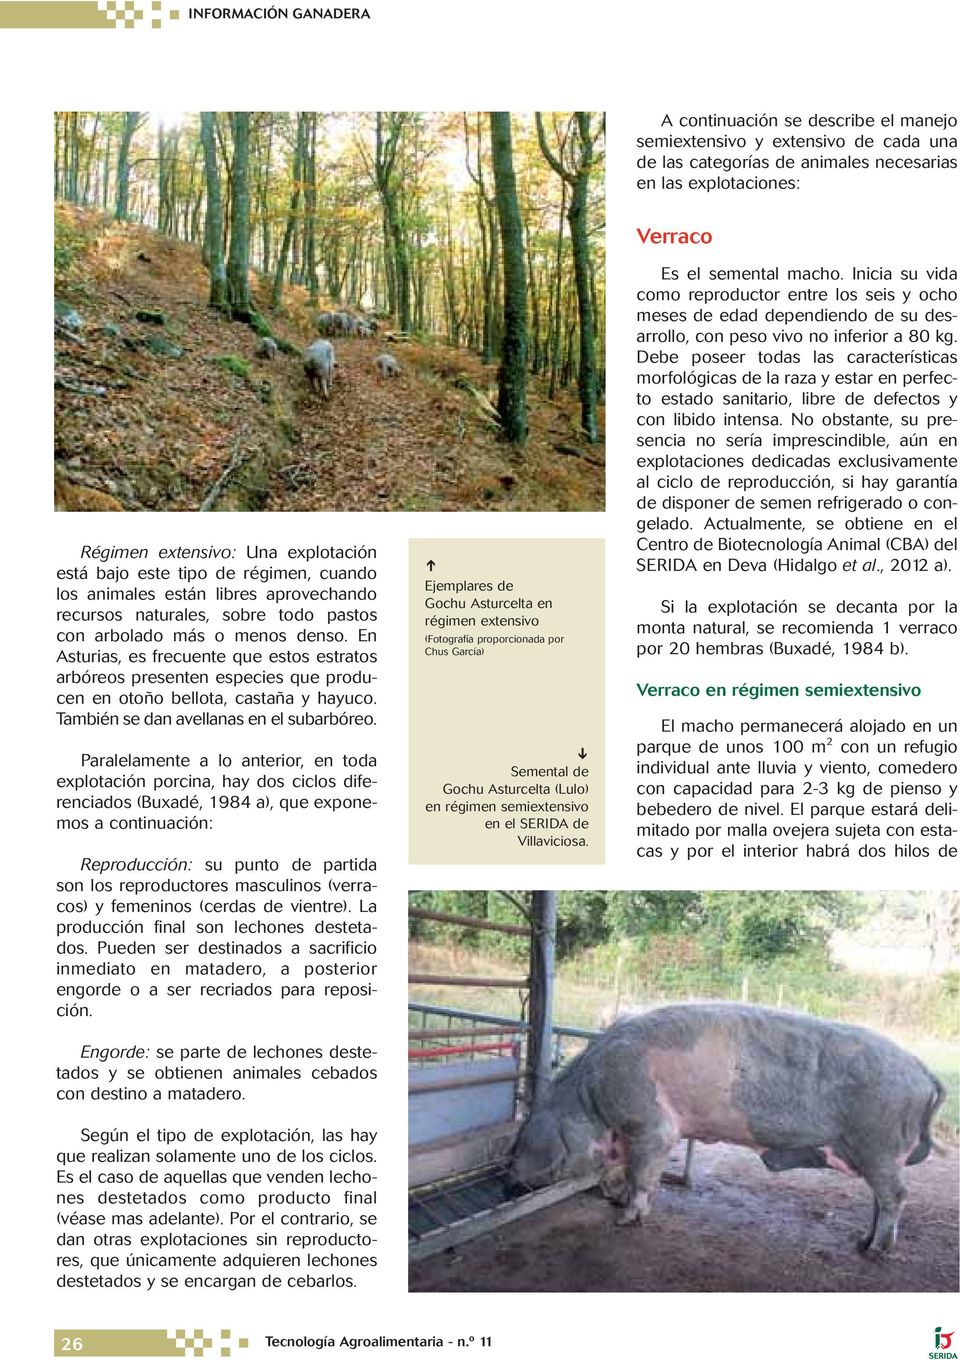 En Asturias, es frecuente que estos estratos arbóreos presenten especies que producen en otoño bellota, castaña y hayuco. También se dan avellanas en el subarbóreo.